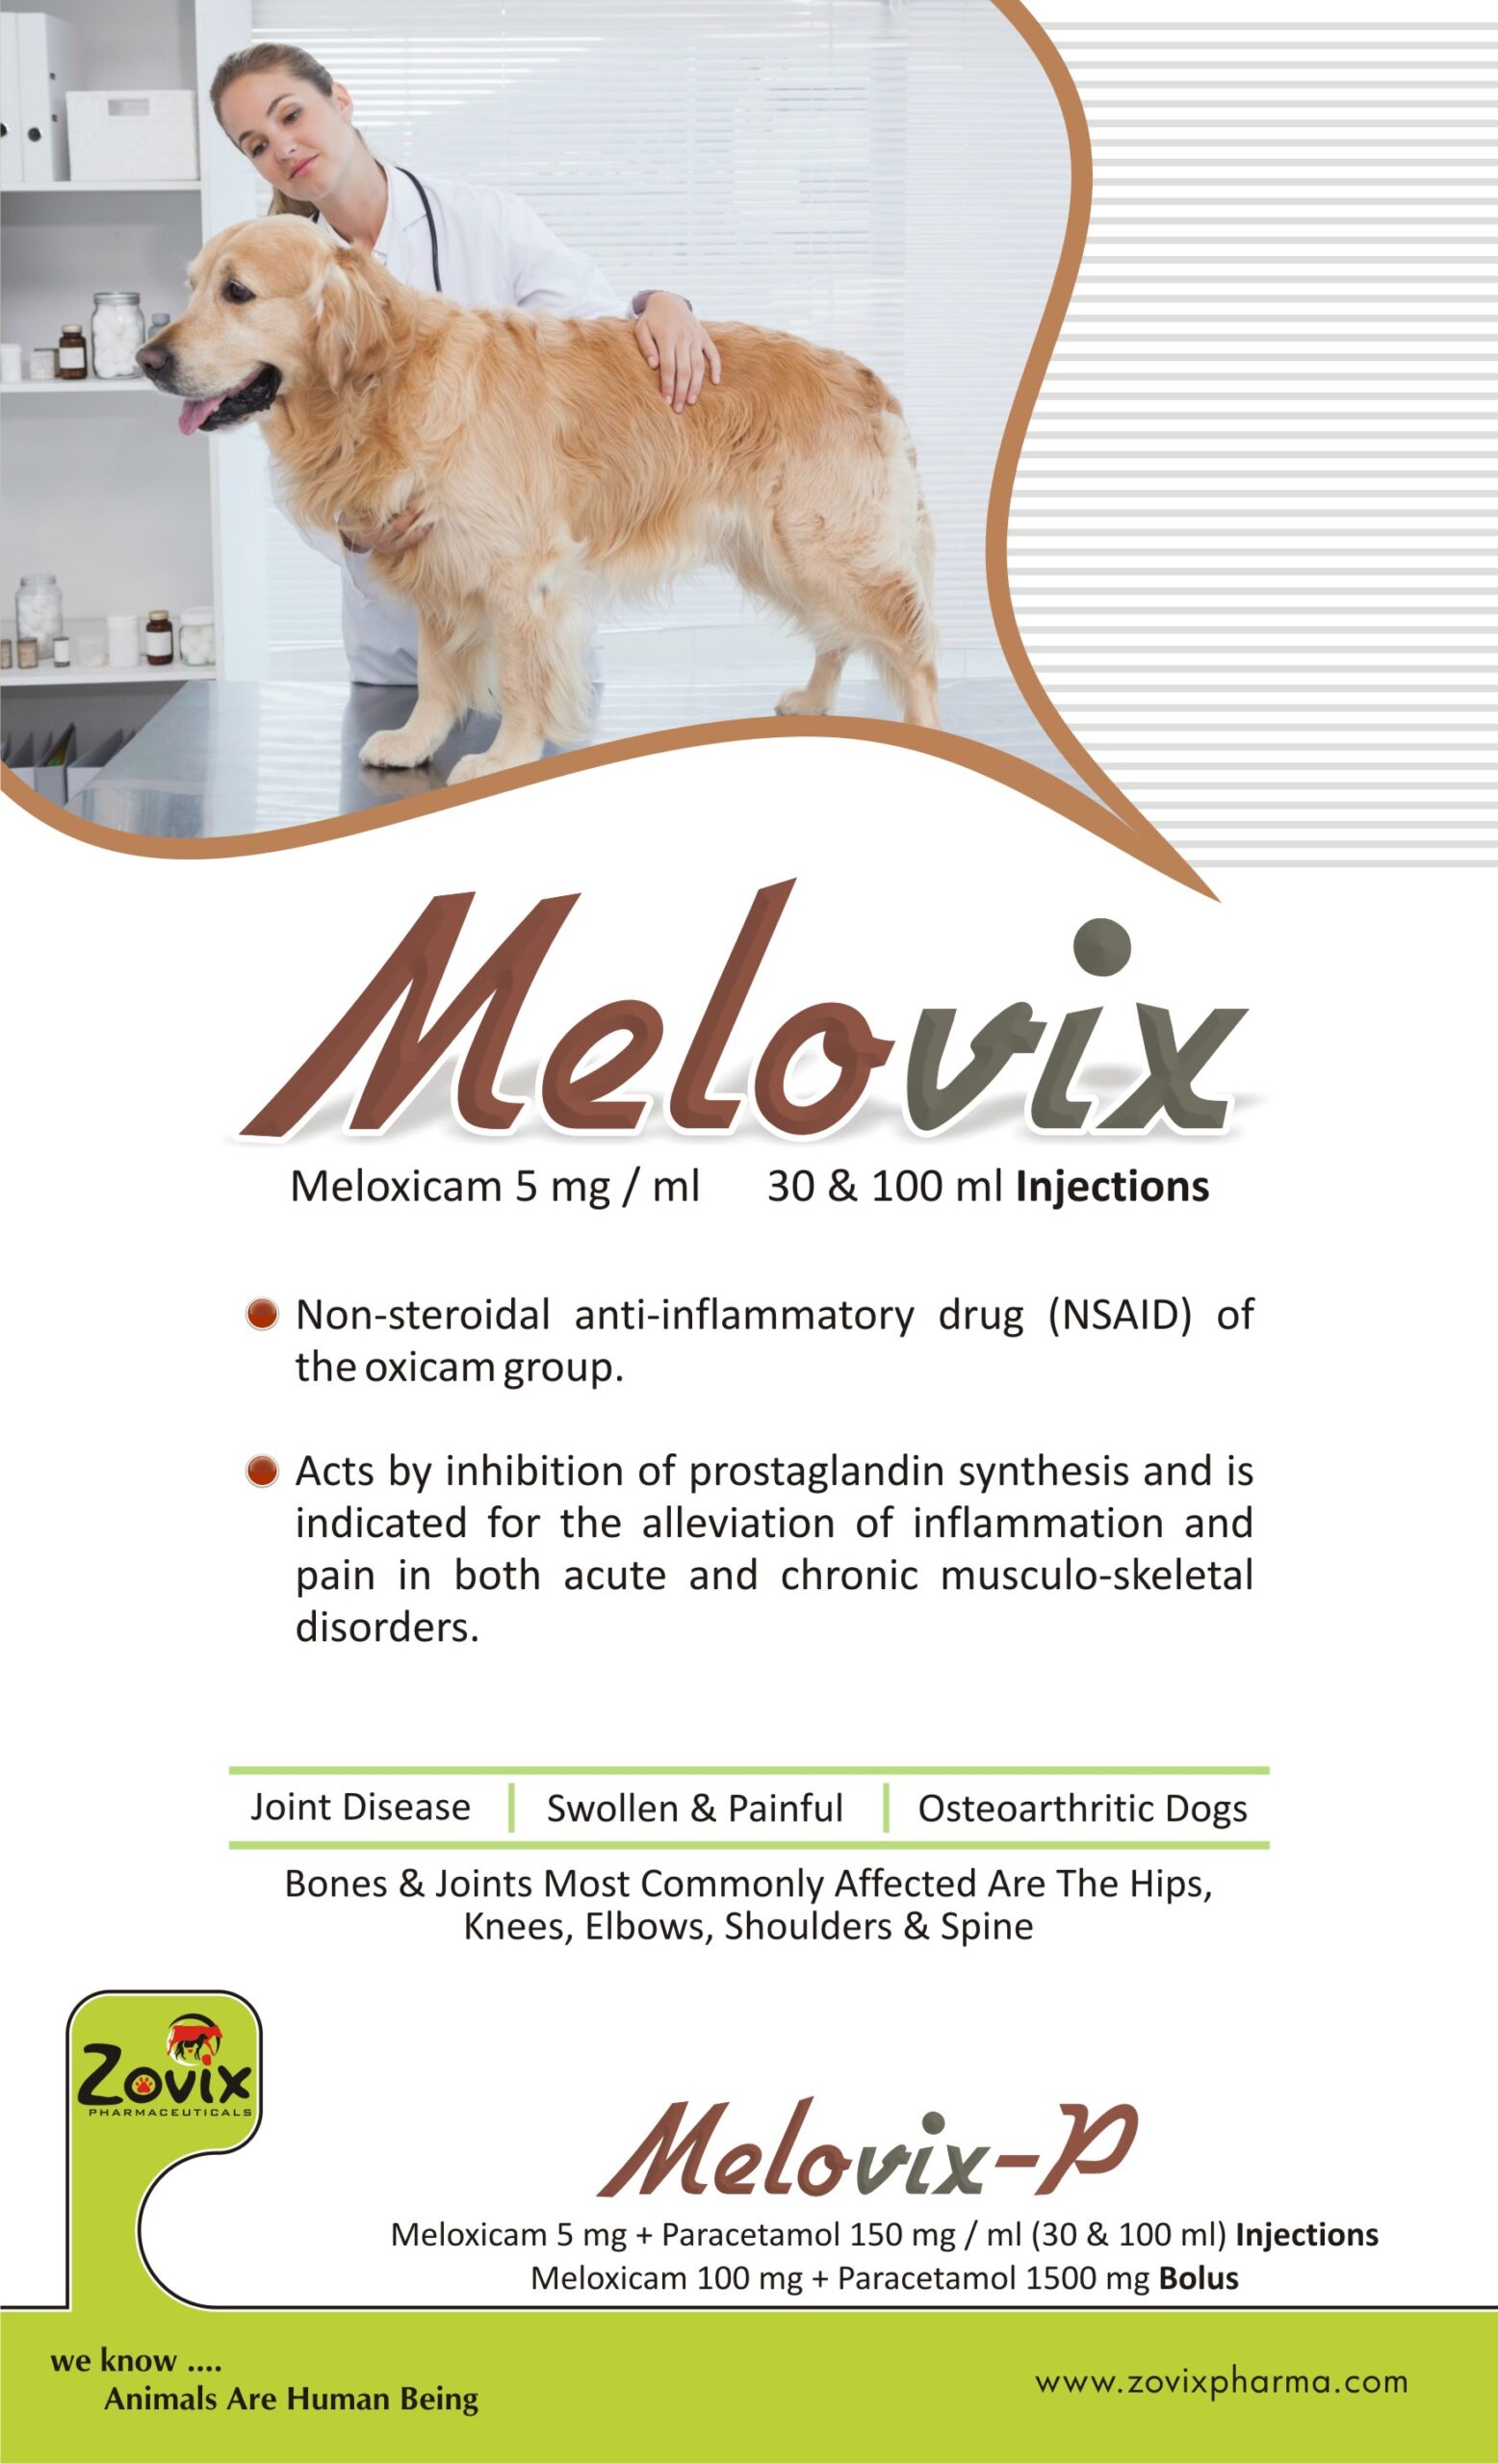 melovix,zofixpharma,veterinaryfeed,veterinaryproducts